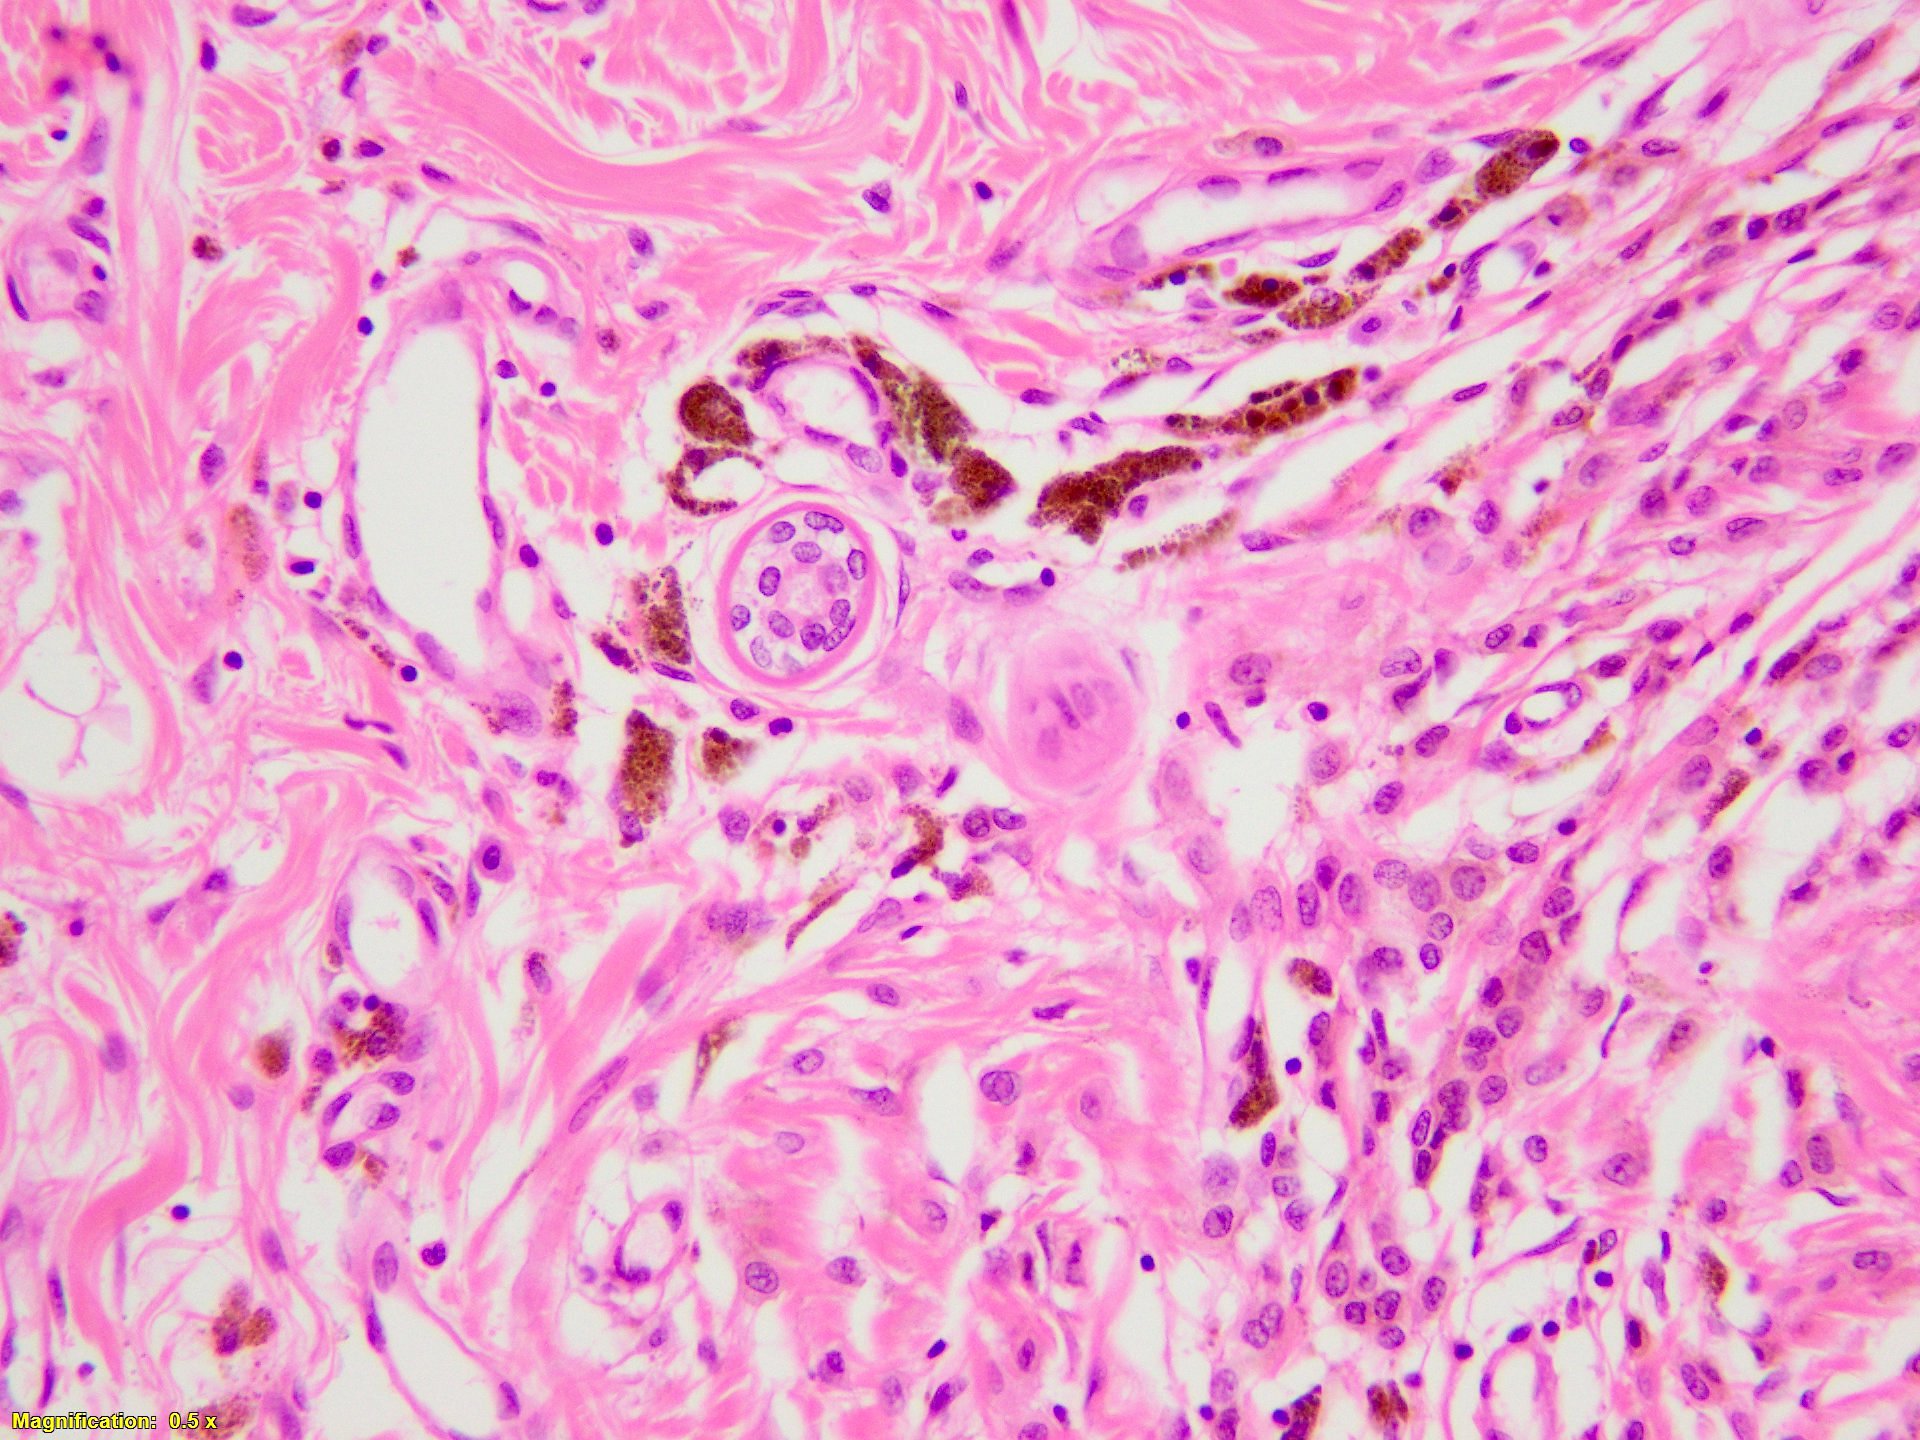 Melanocytes centered on eccrine duct